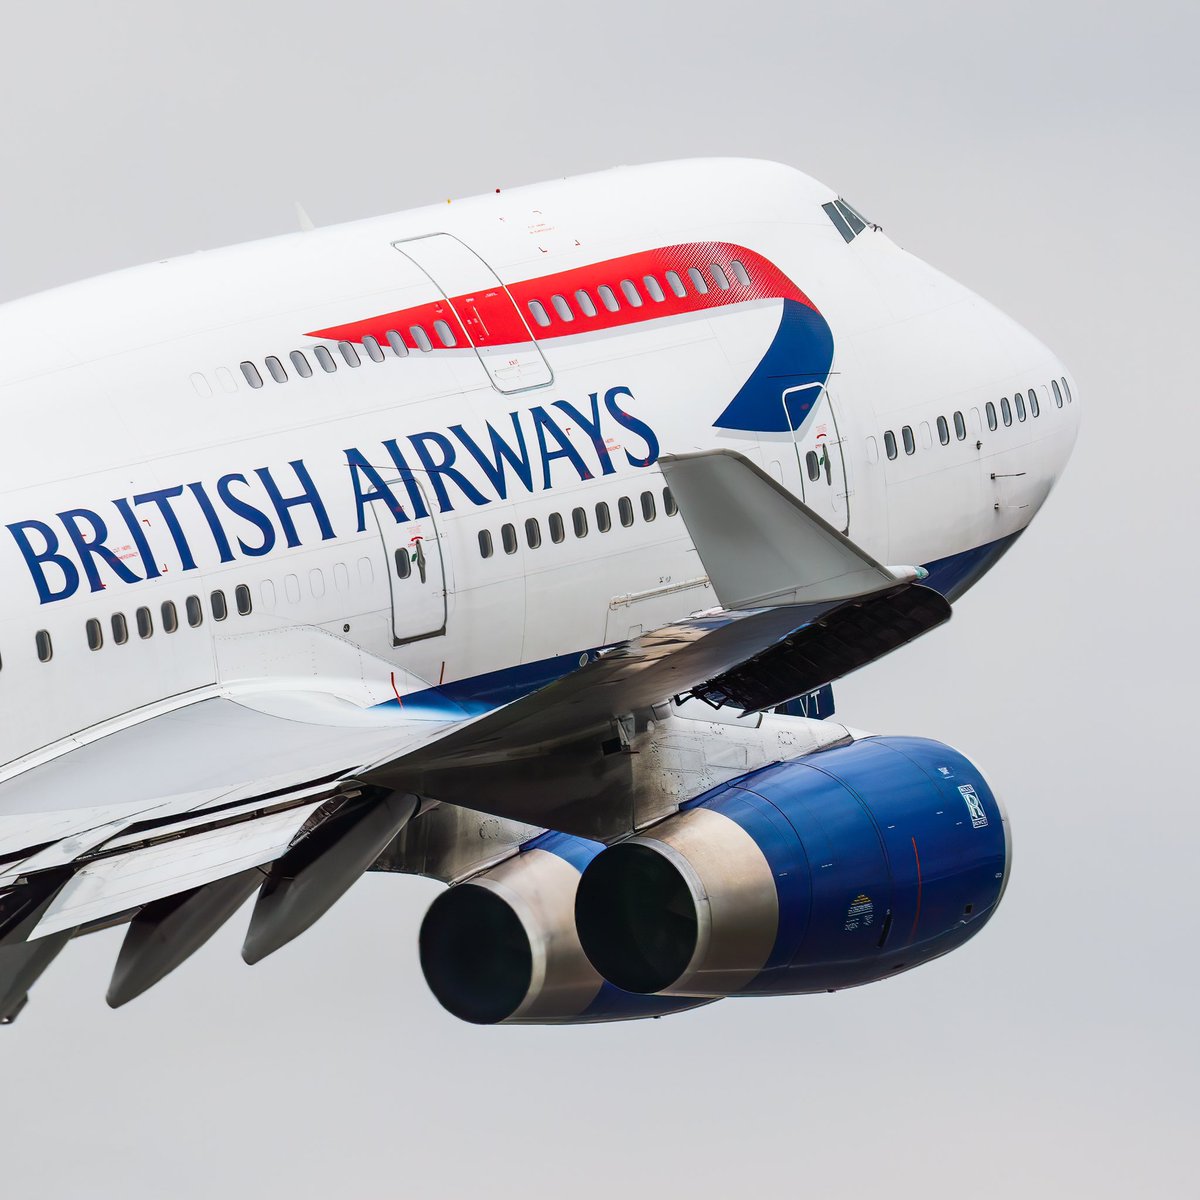 The Queen of the Skies ft typical British weather 🌧️ #boeing747 @British_Airways @BoeingUK @HeathrowAirport